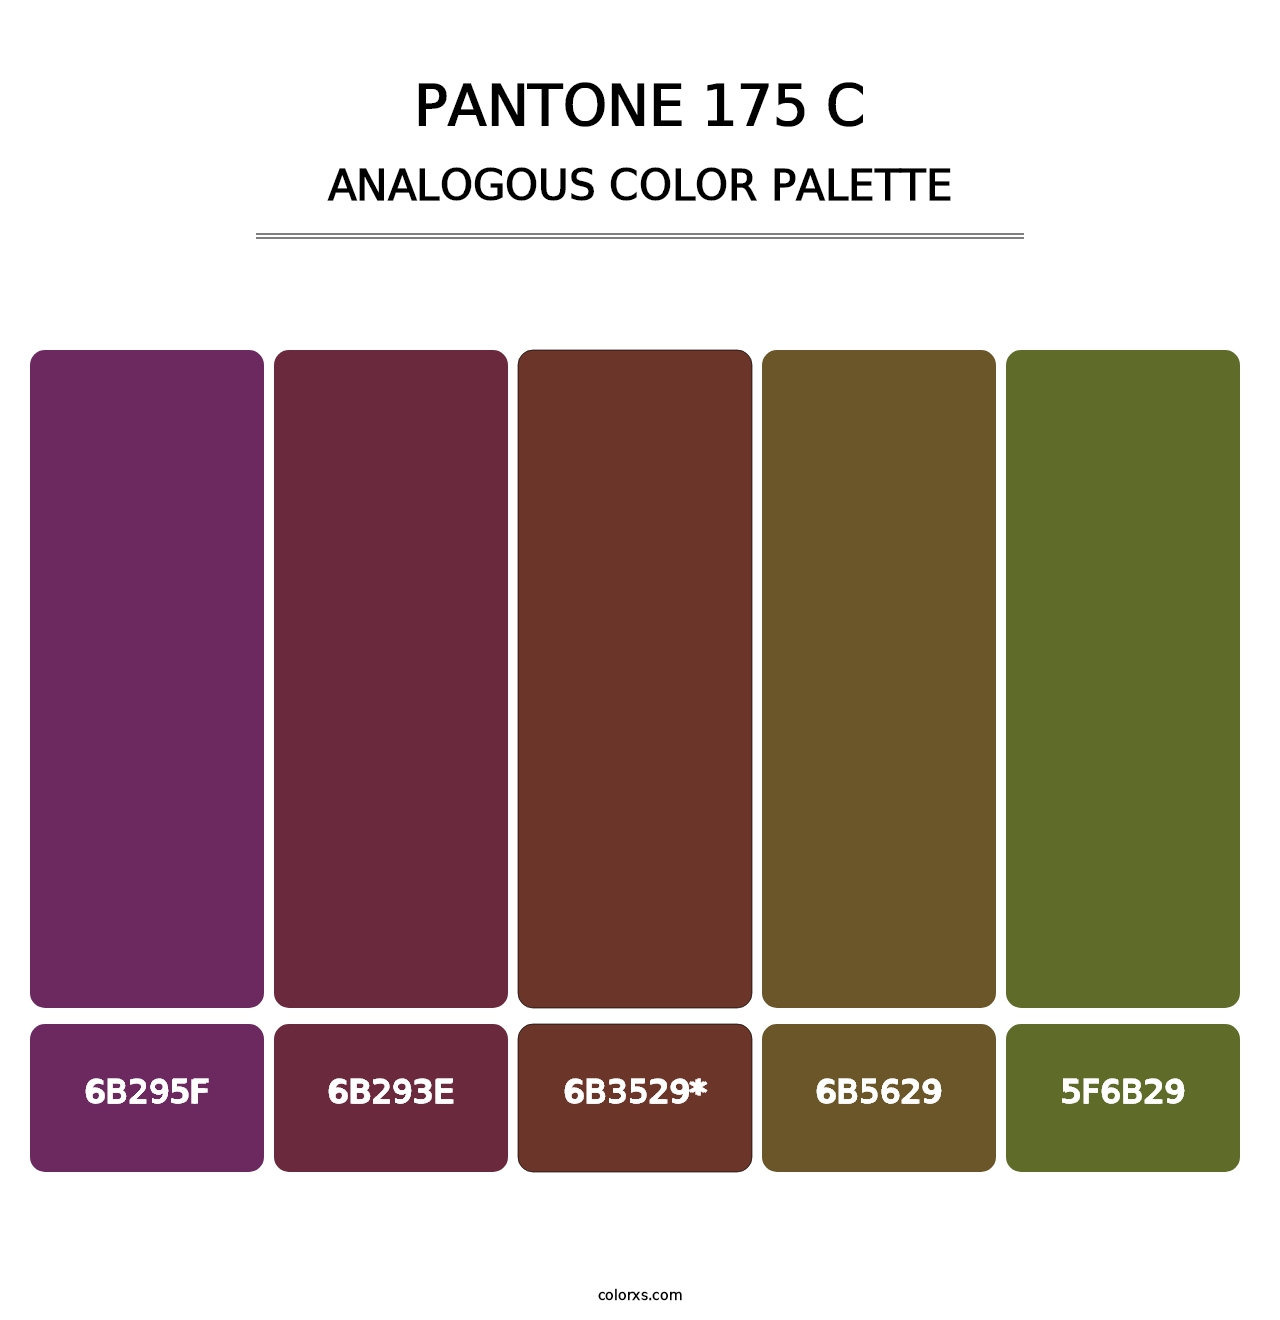 PANTONE 175 C - Analogous Color Palette